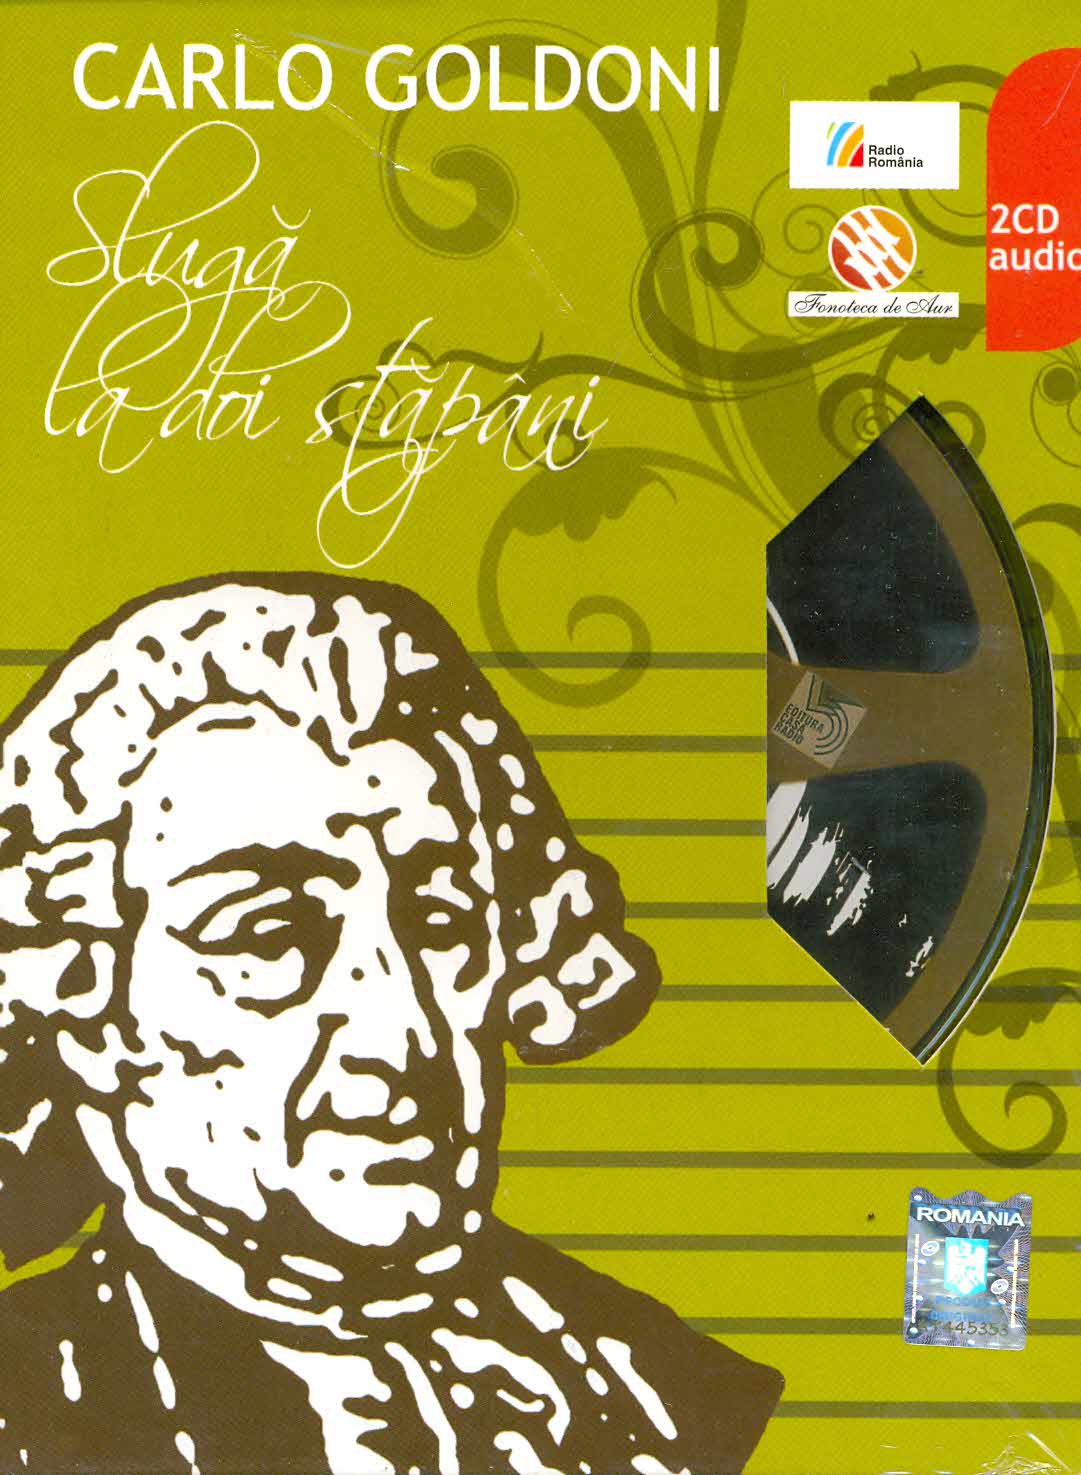 2CD Carlo Goldoni - Sluga la doi stapani